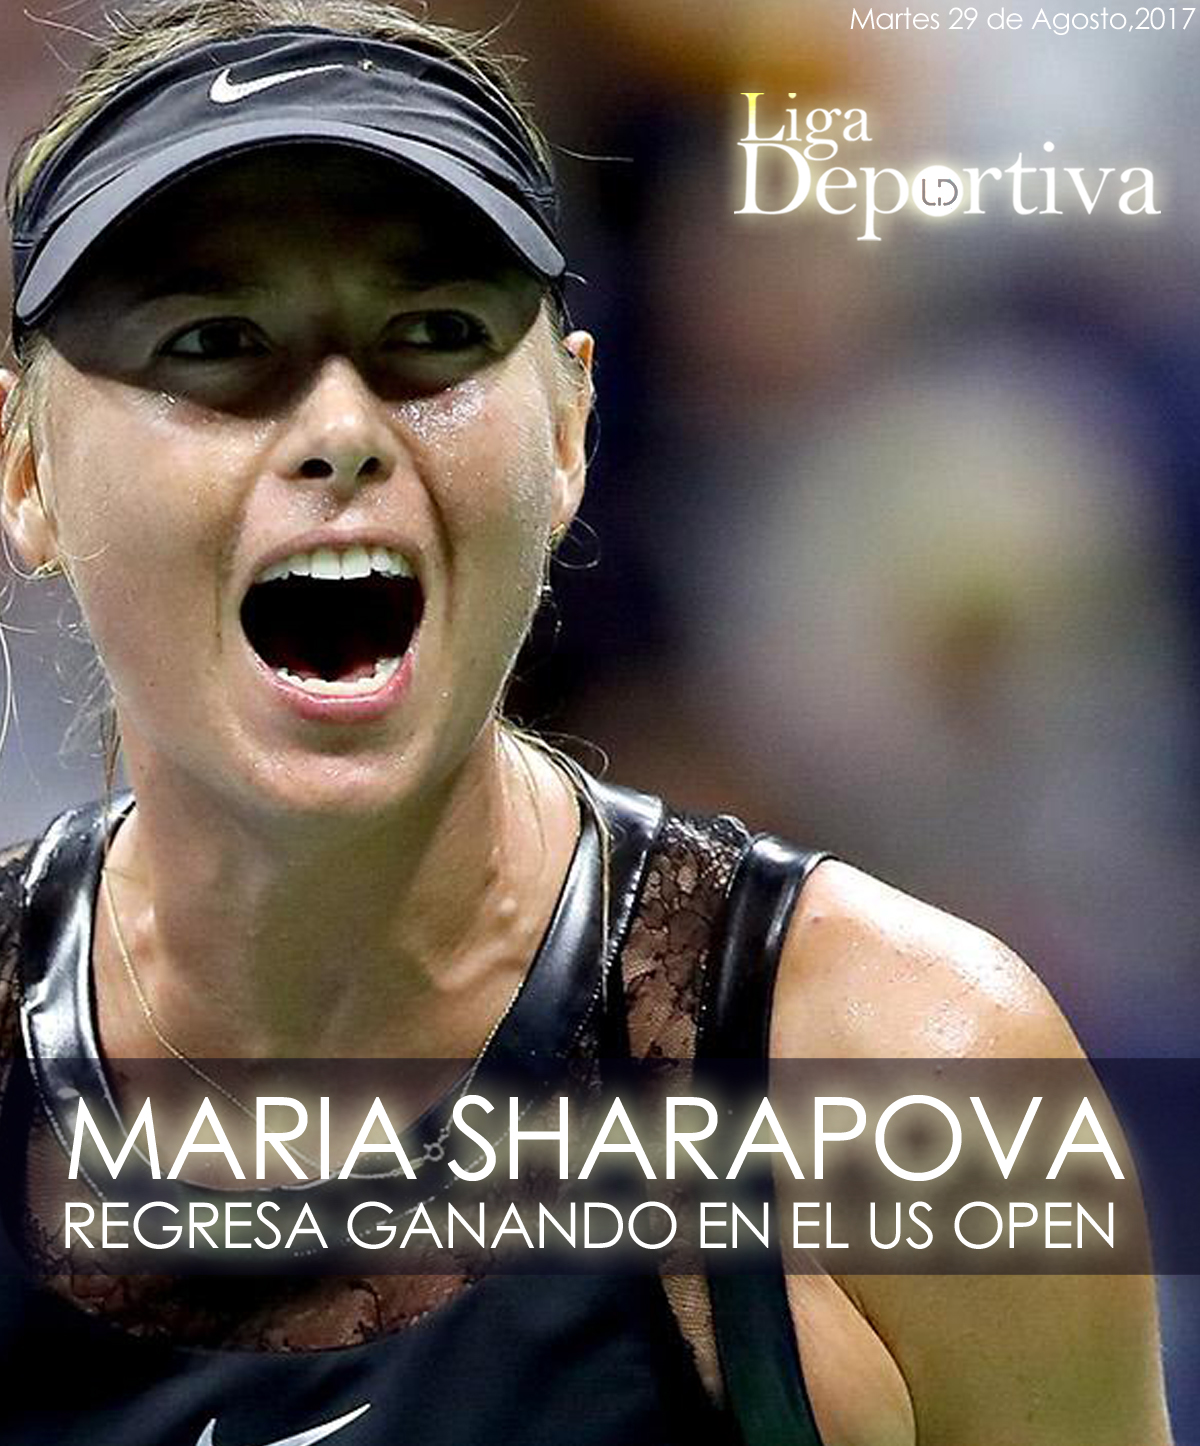 Maria Sharapova regresa a las canchas ganando primer round del US Open 